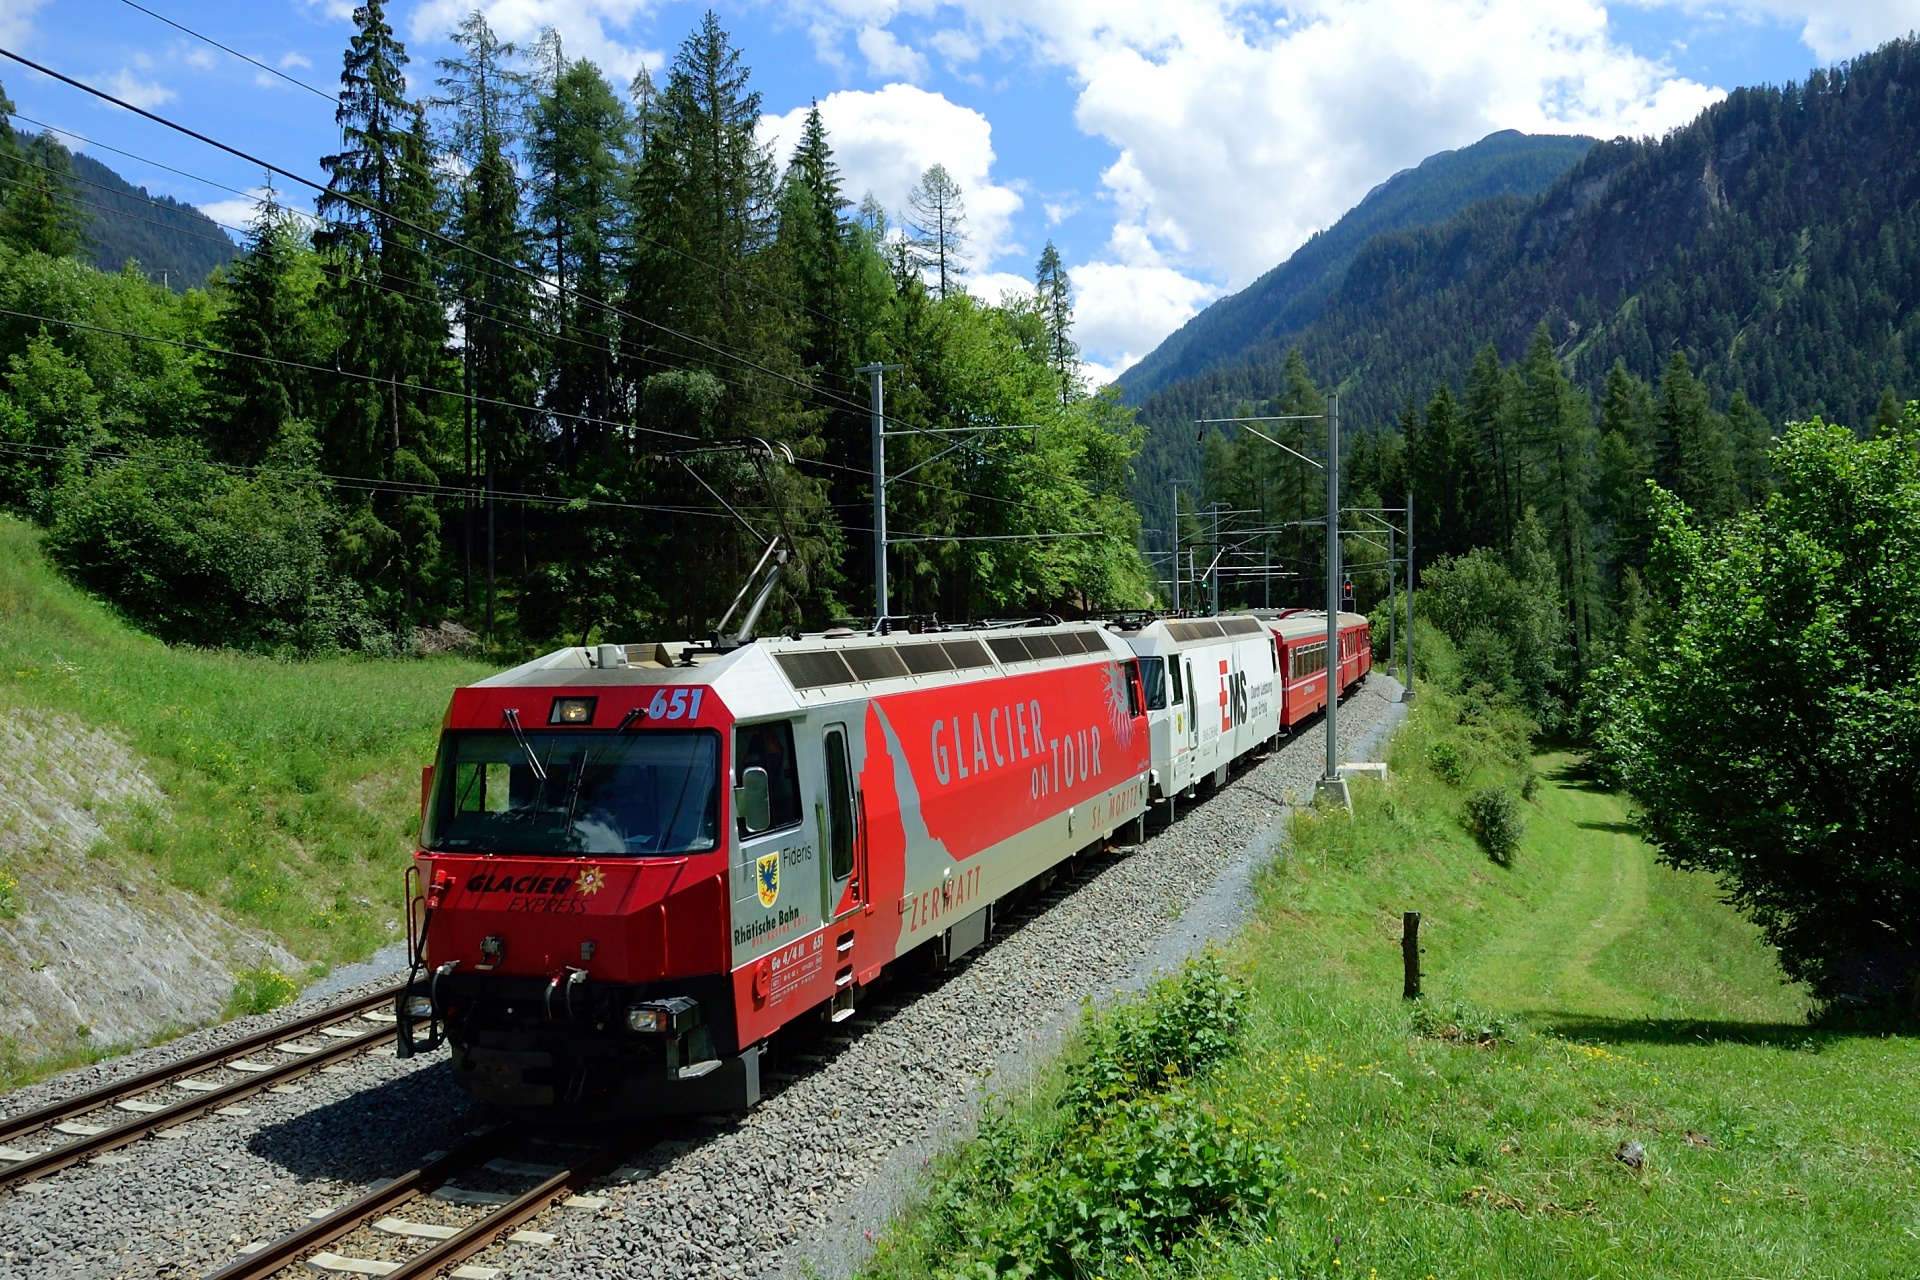 鉄道 電気機関車 スイスの山岳鉄道 壁紙19x1280 壁紙館